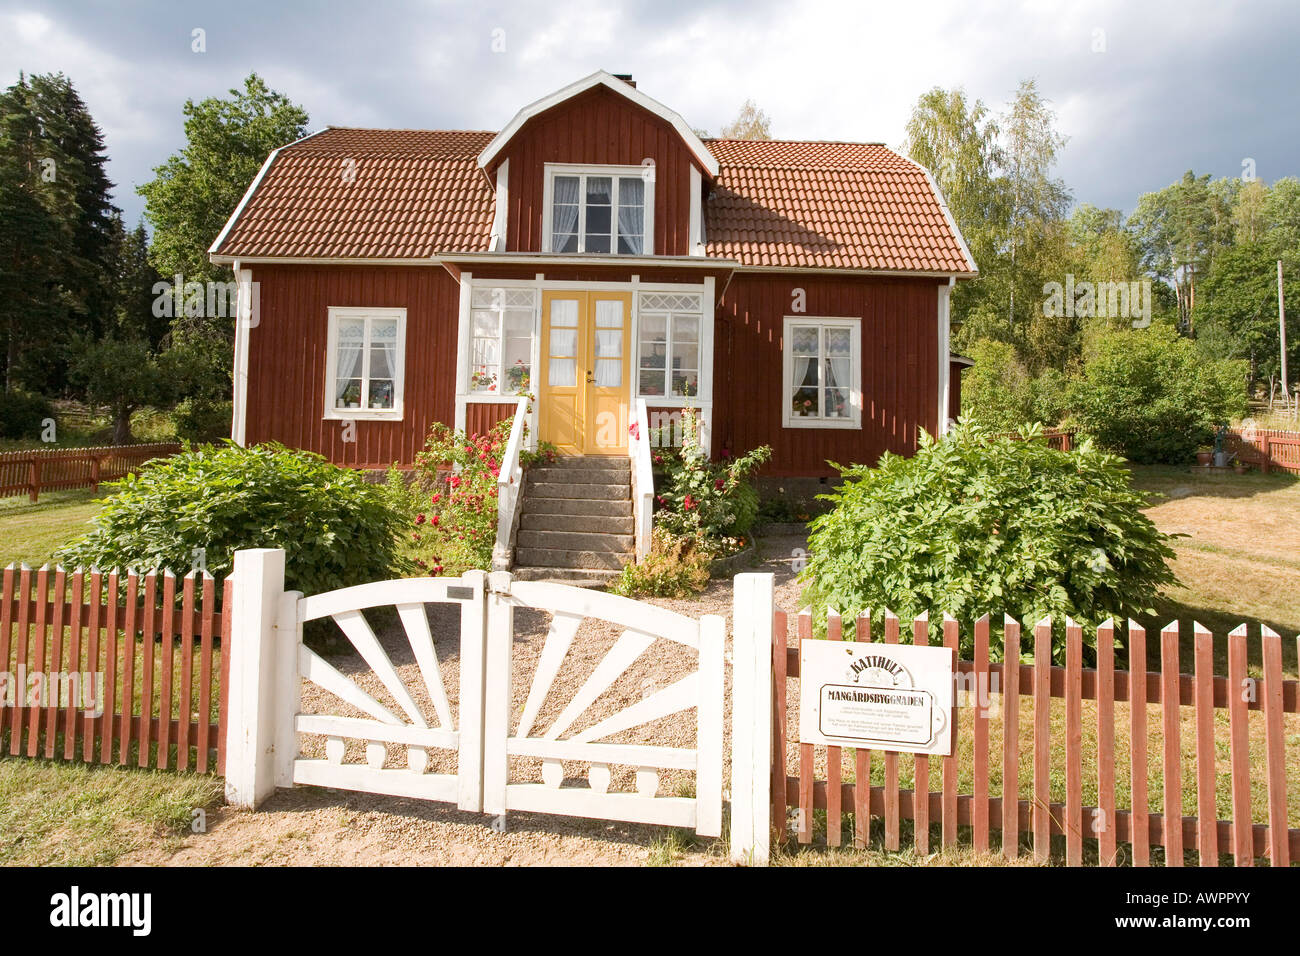 Filmaufnahmen, die Lage und ehemalige Heimat von Astrid Lindgren in Katthult/Gibberyd, Schweden, Skandinavien, Europa Stockfoto